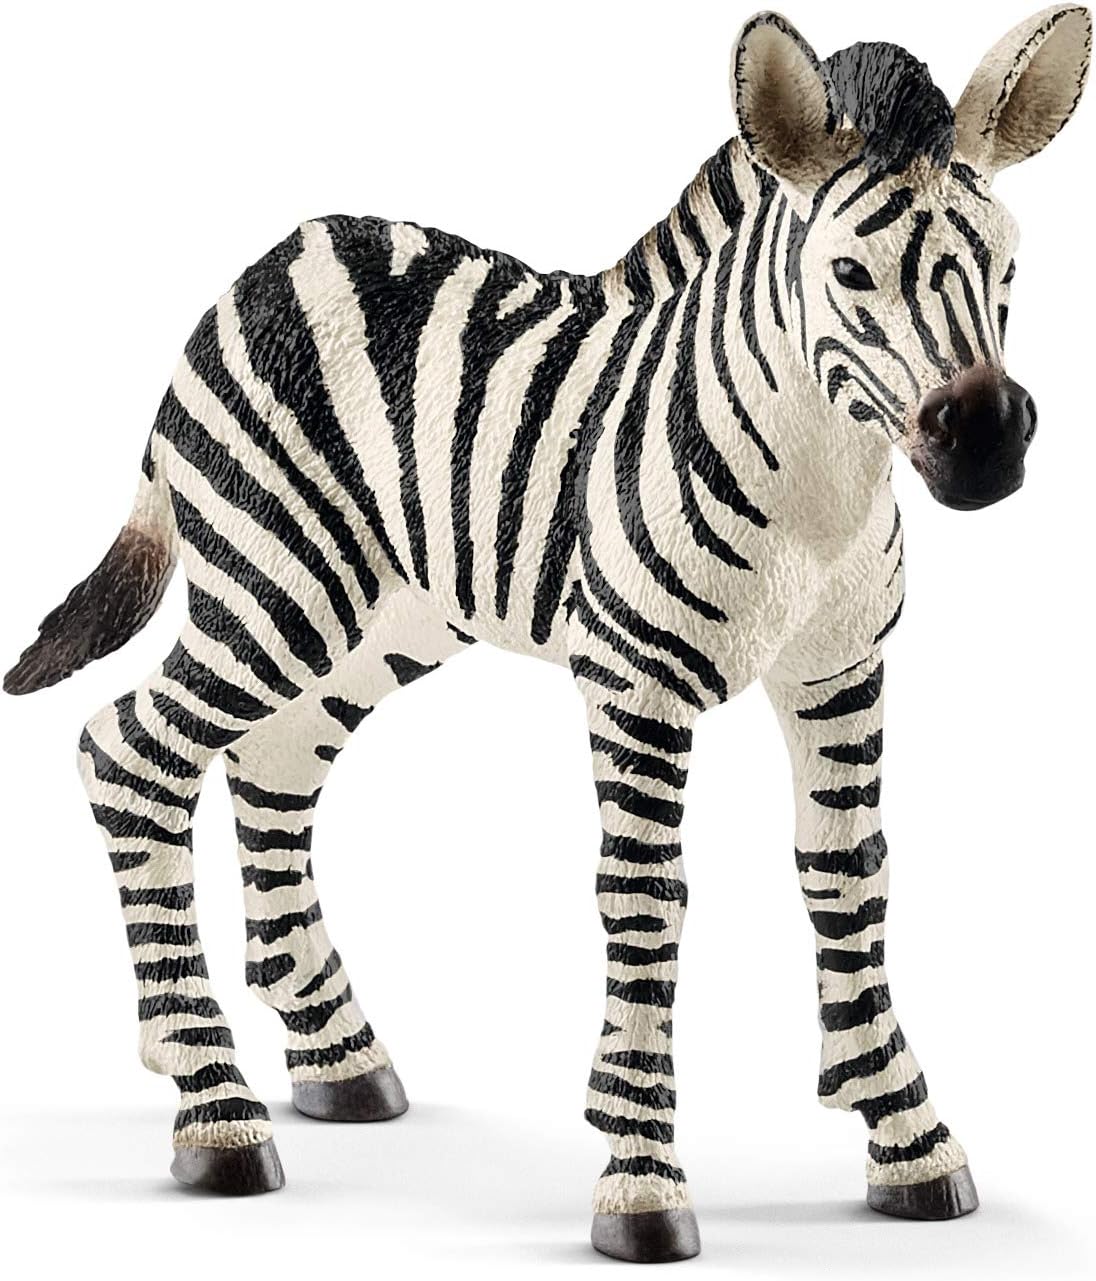 Zebra cucciolo